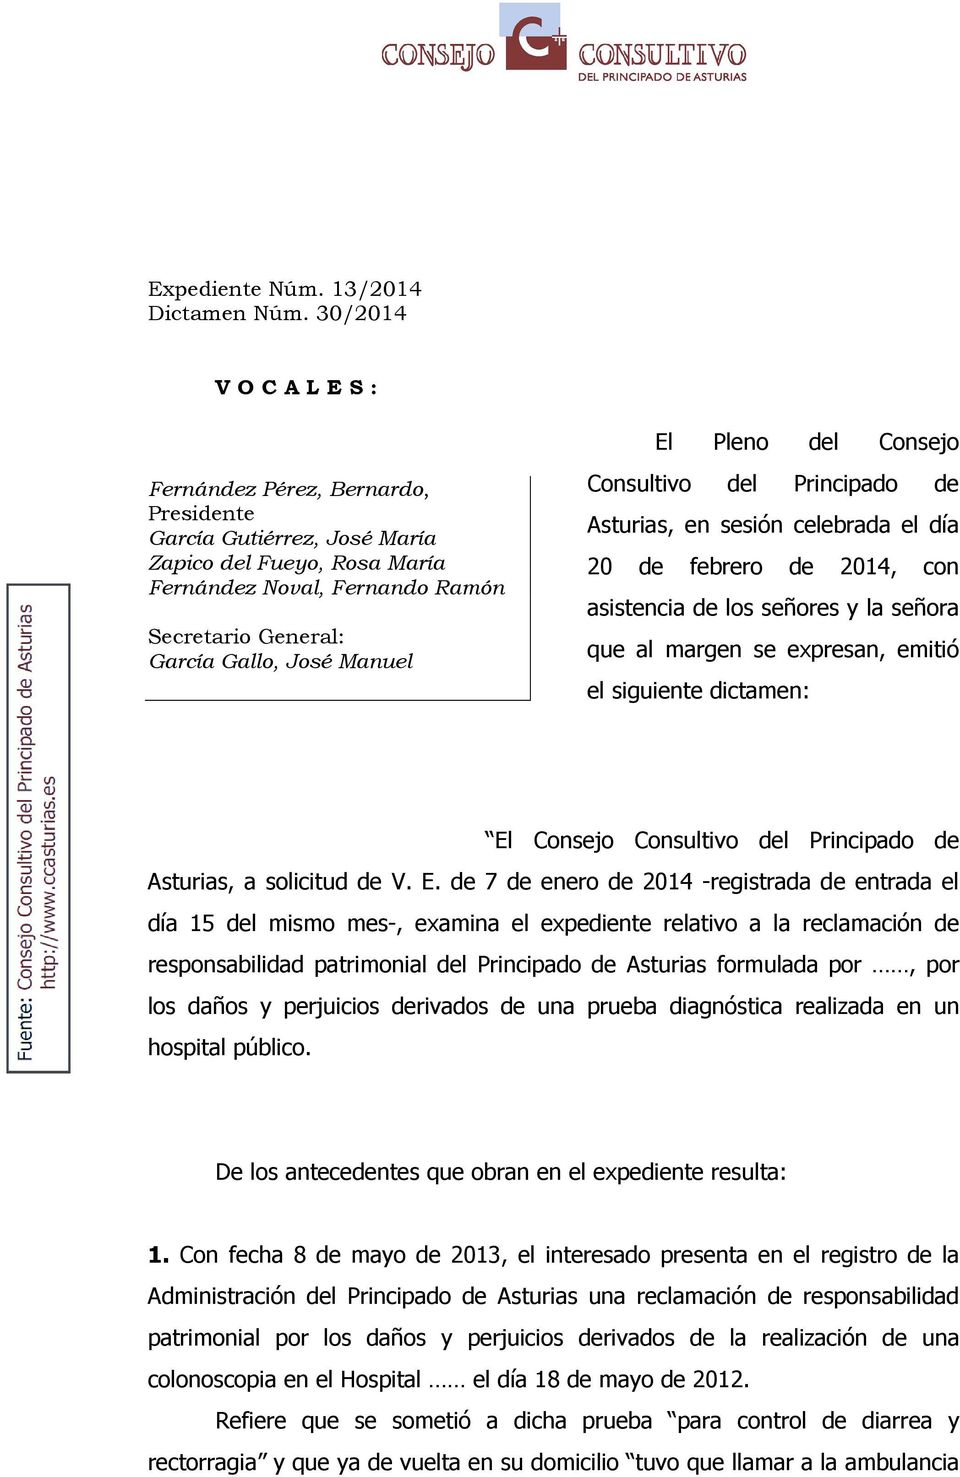 El Pleno del Consejo Consultivo del Principado de Asturias, en sesión celebrada el día 20 de febrero de 2014, con asistencia de los señores y la señora que al margen se expresan, emitió el siguiente